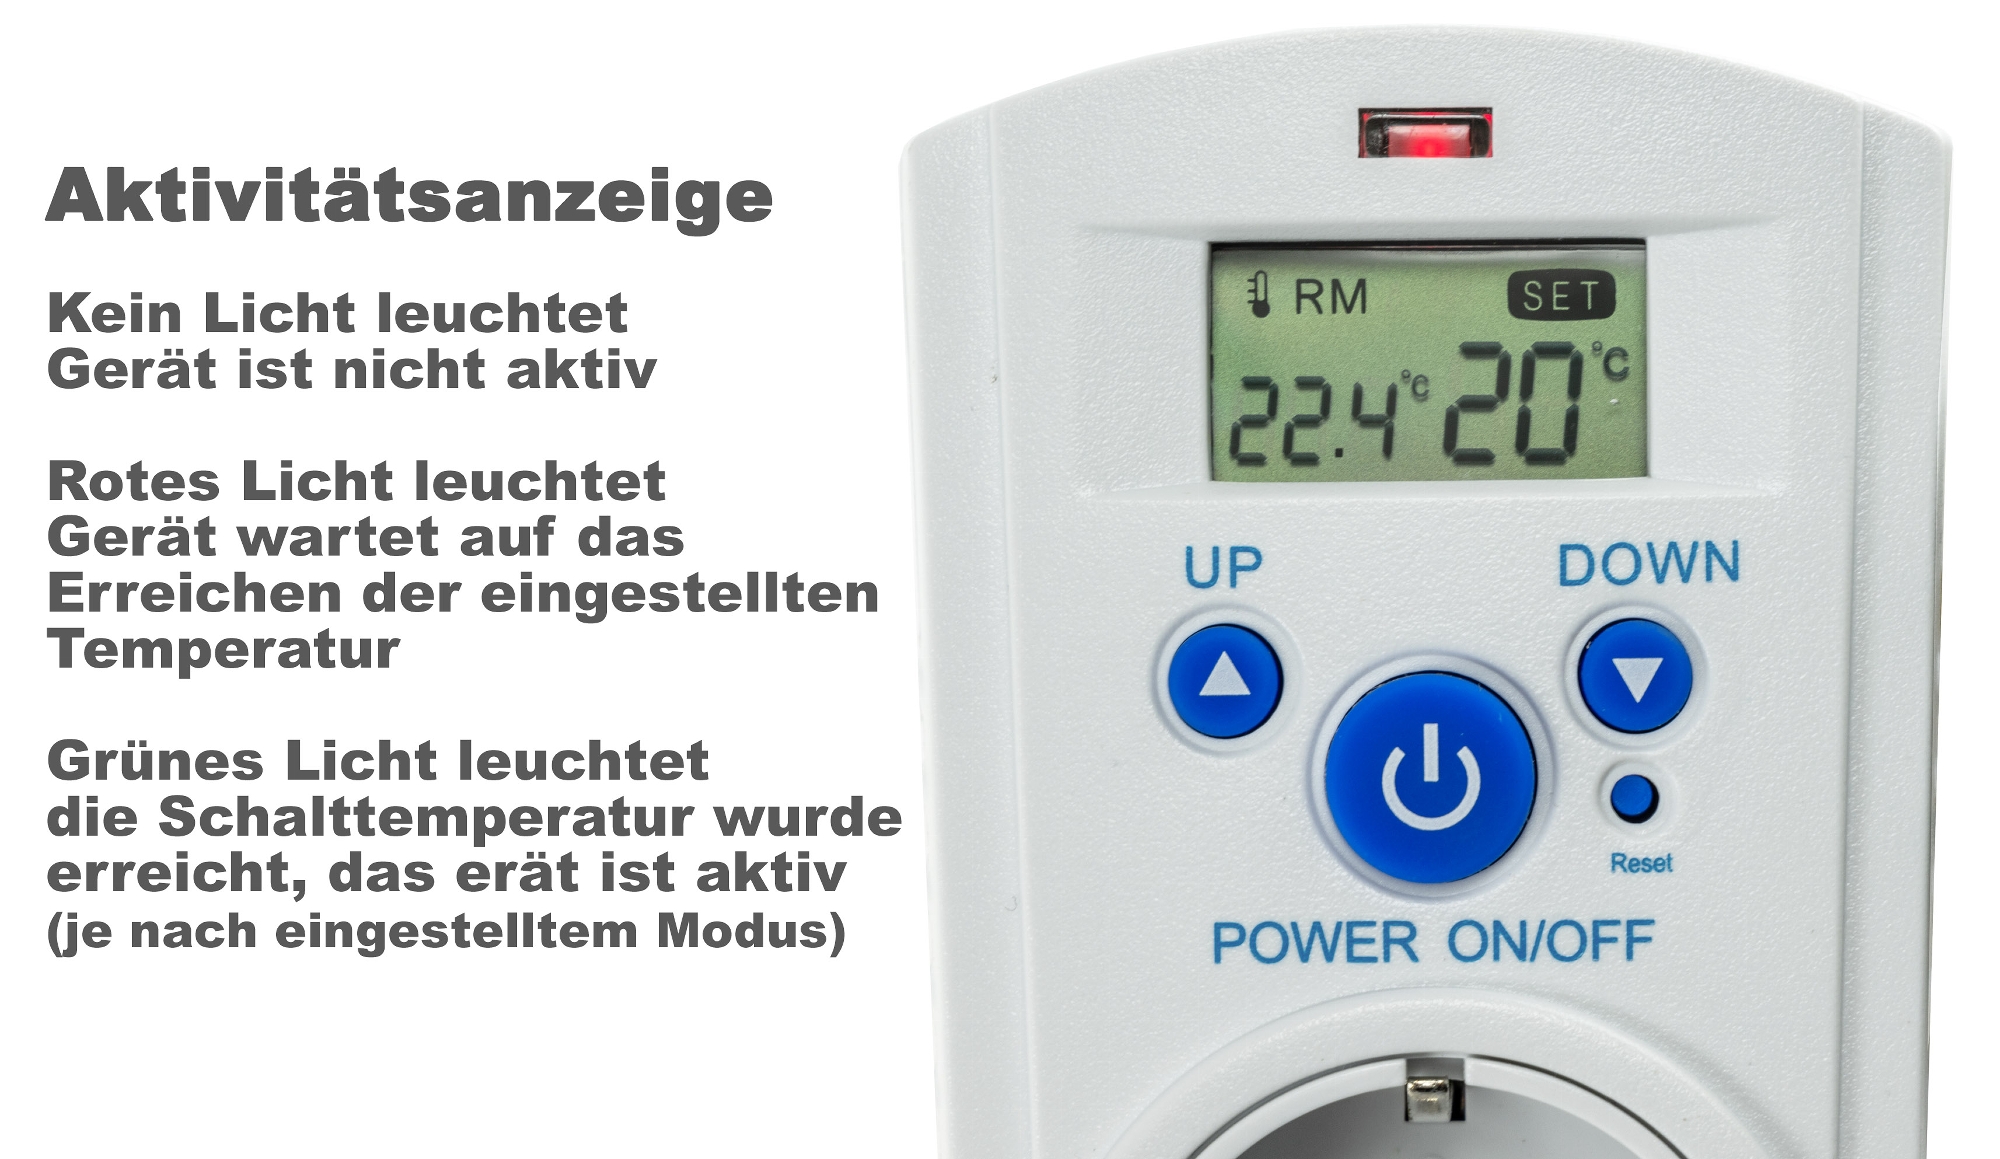 Steckdosen-Thermostat ST-35 digi max. 3500W, 5-30°C, EIN/AUS